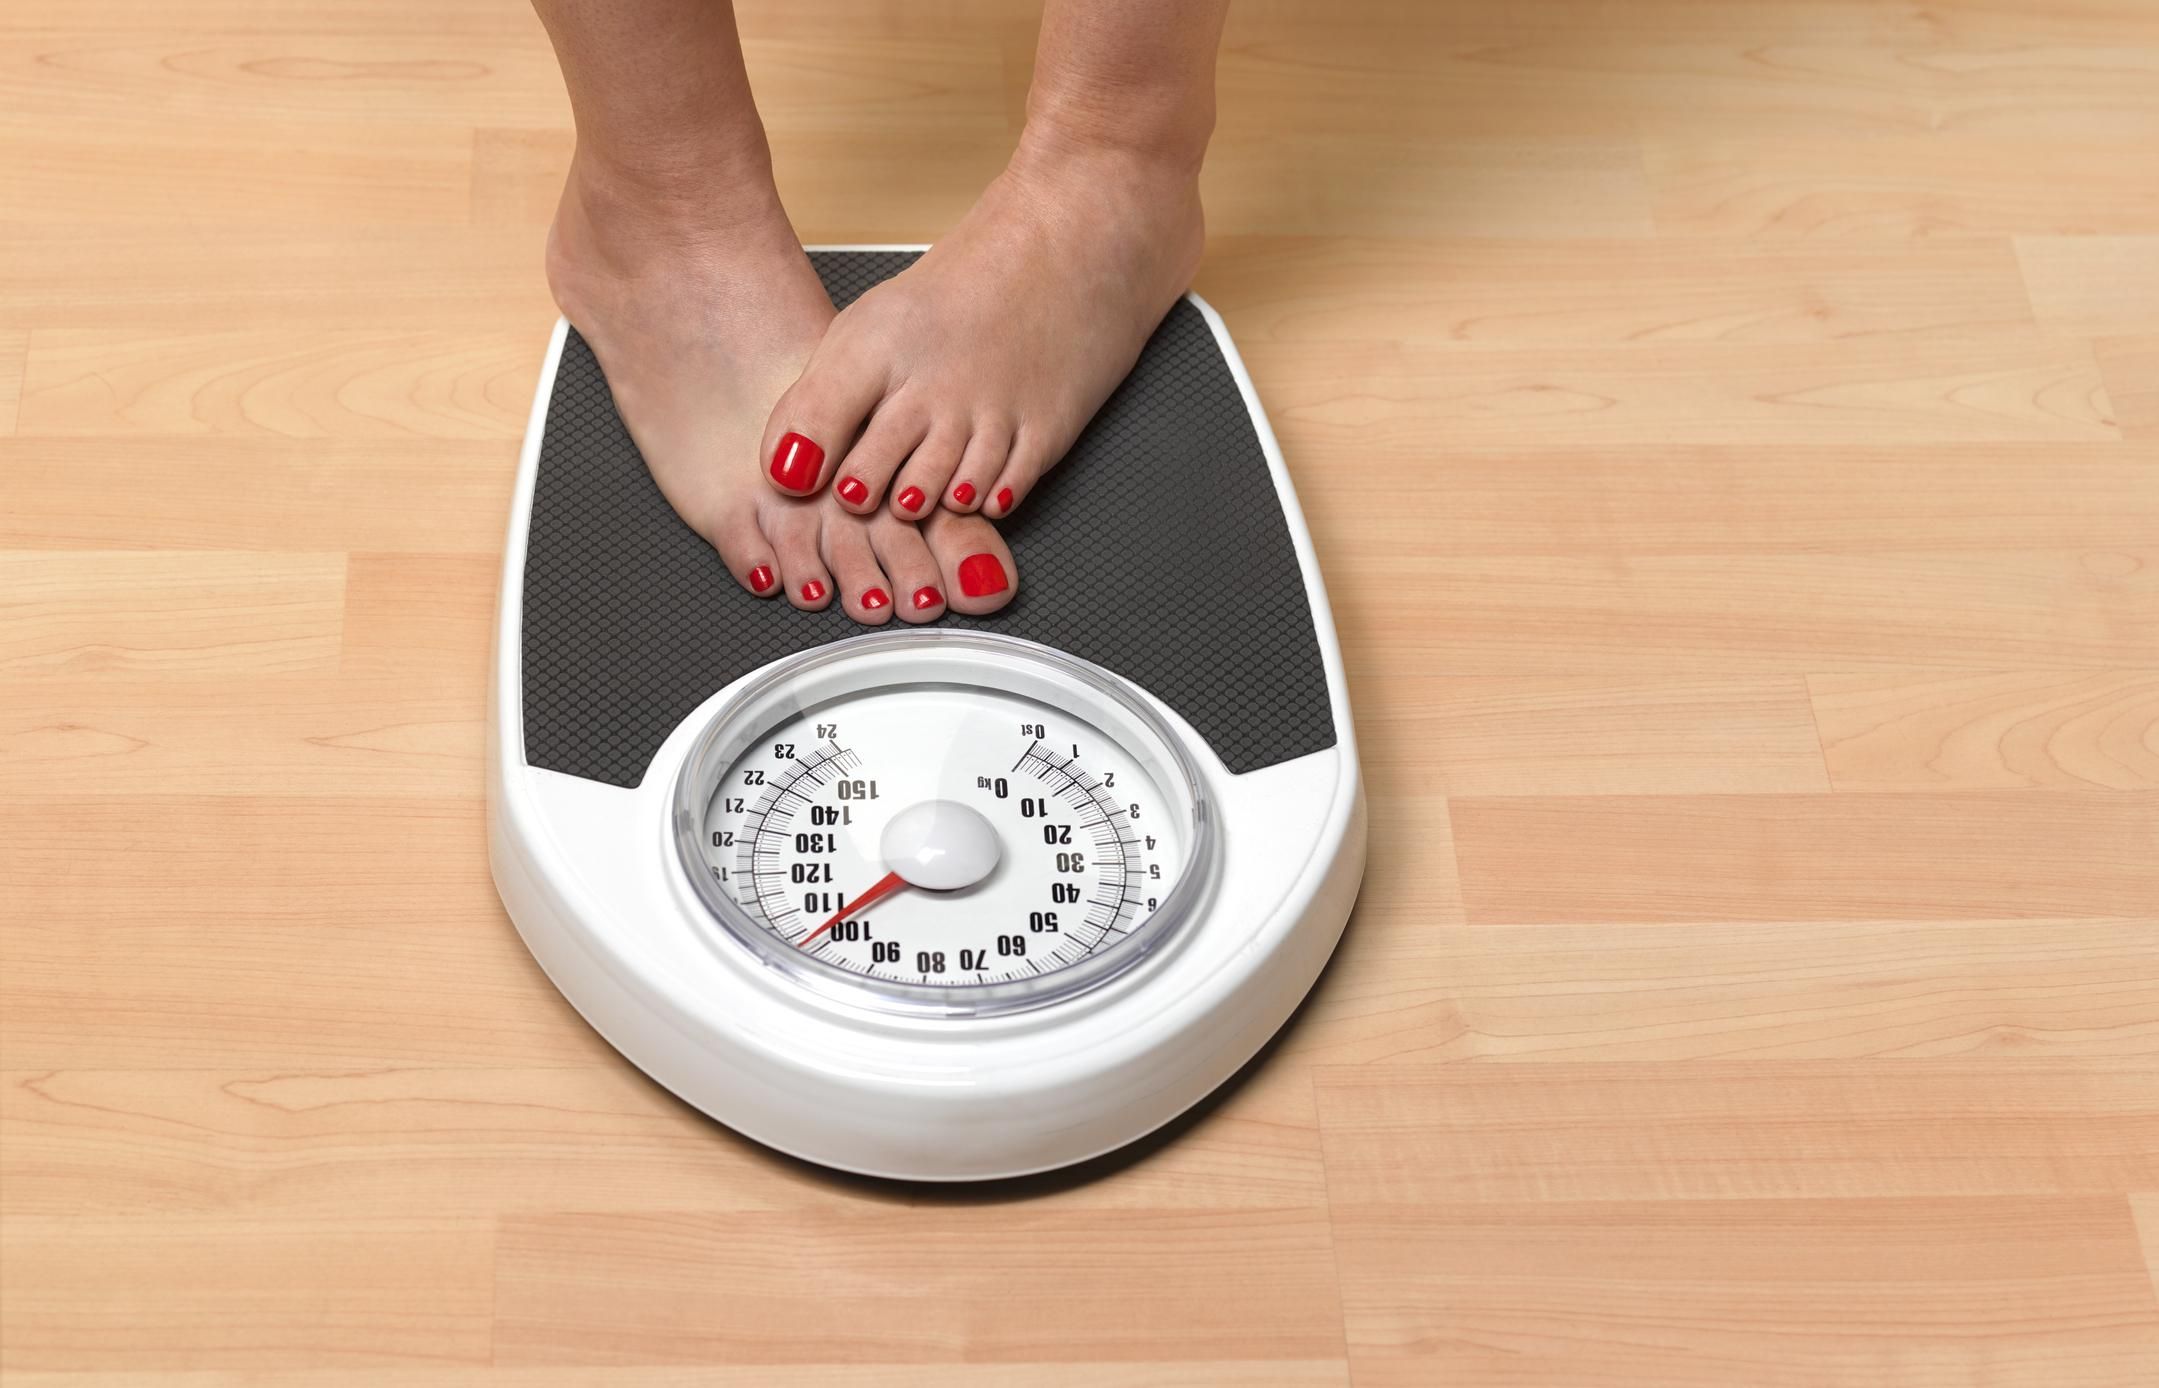 Одинокие женщины больше страдают от ожирения: исследование